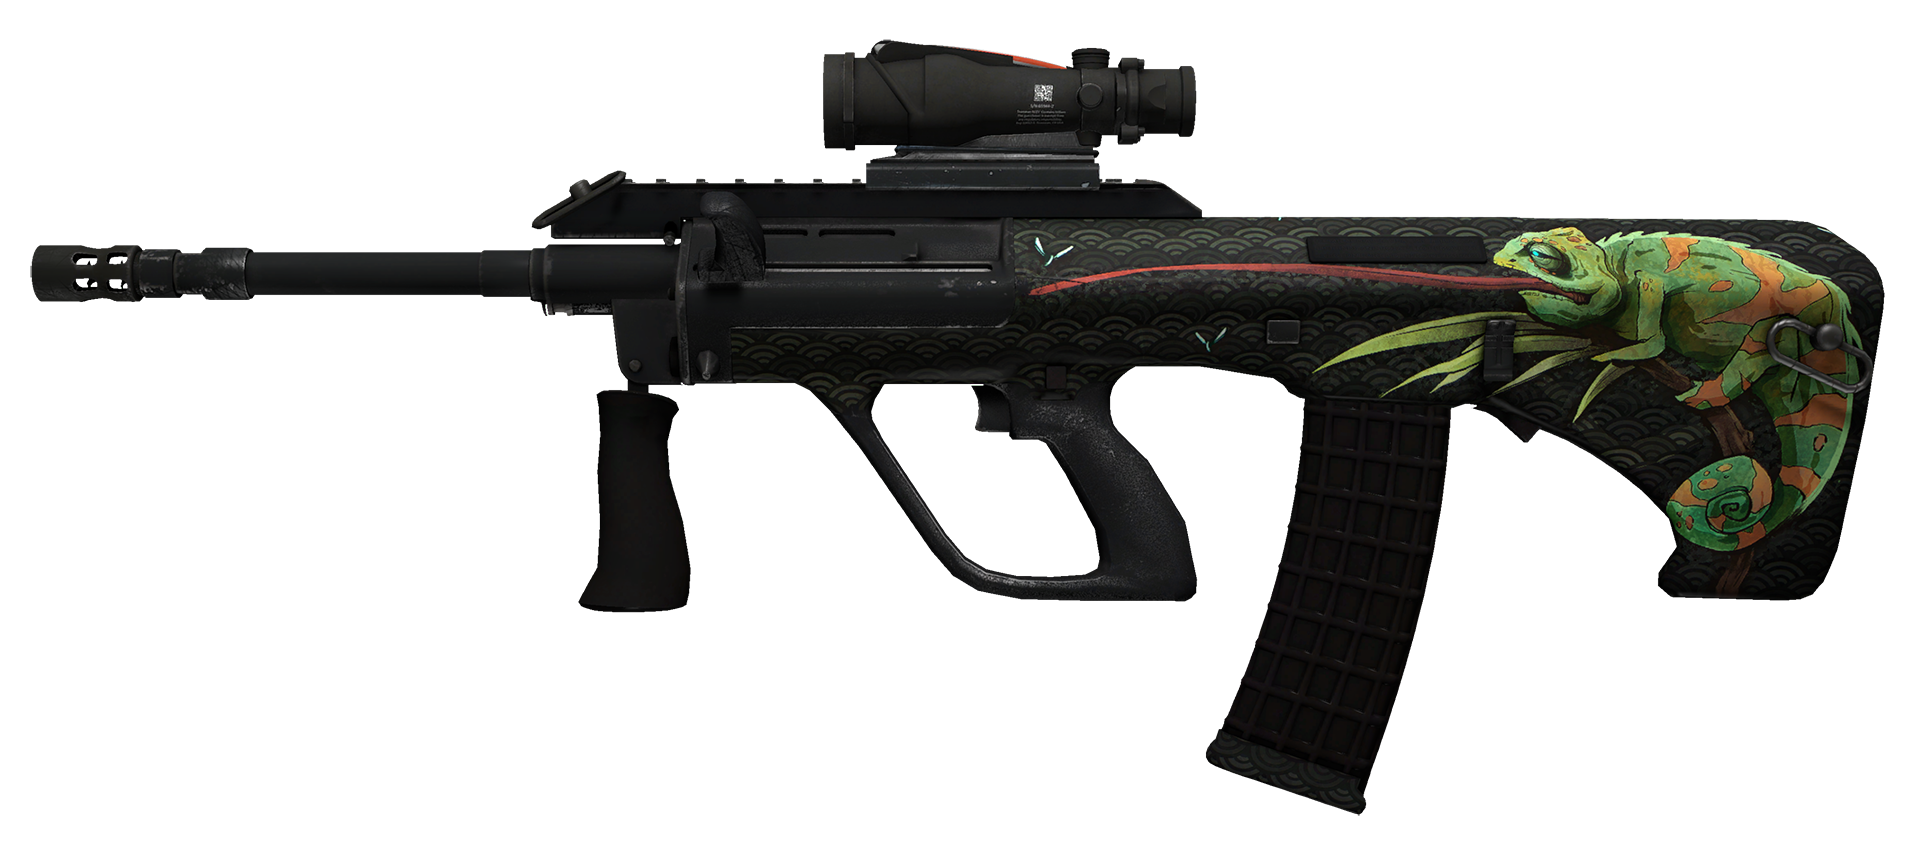 Про-игроки выбирали SG 553 вместо AK-47 за игнорирование брони. Пришлось нерфить